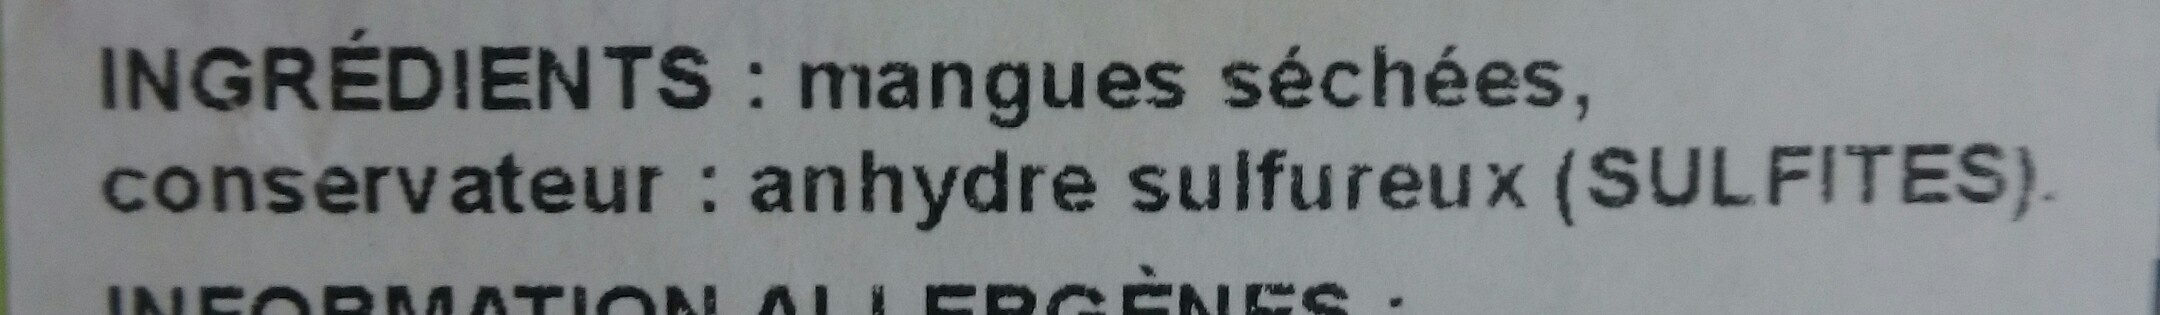 mangurs séchées - Ingrédients - fr